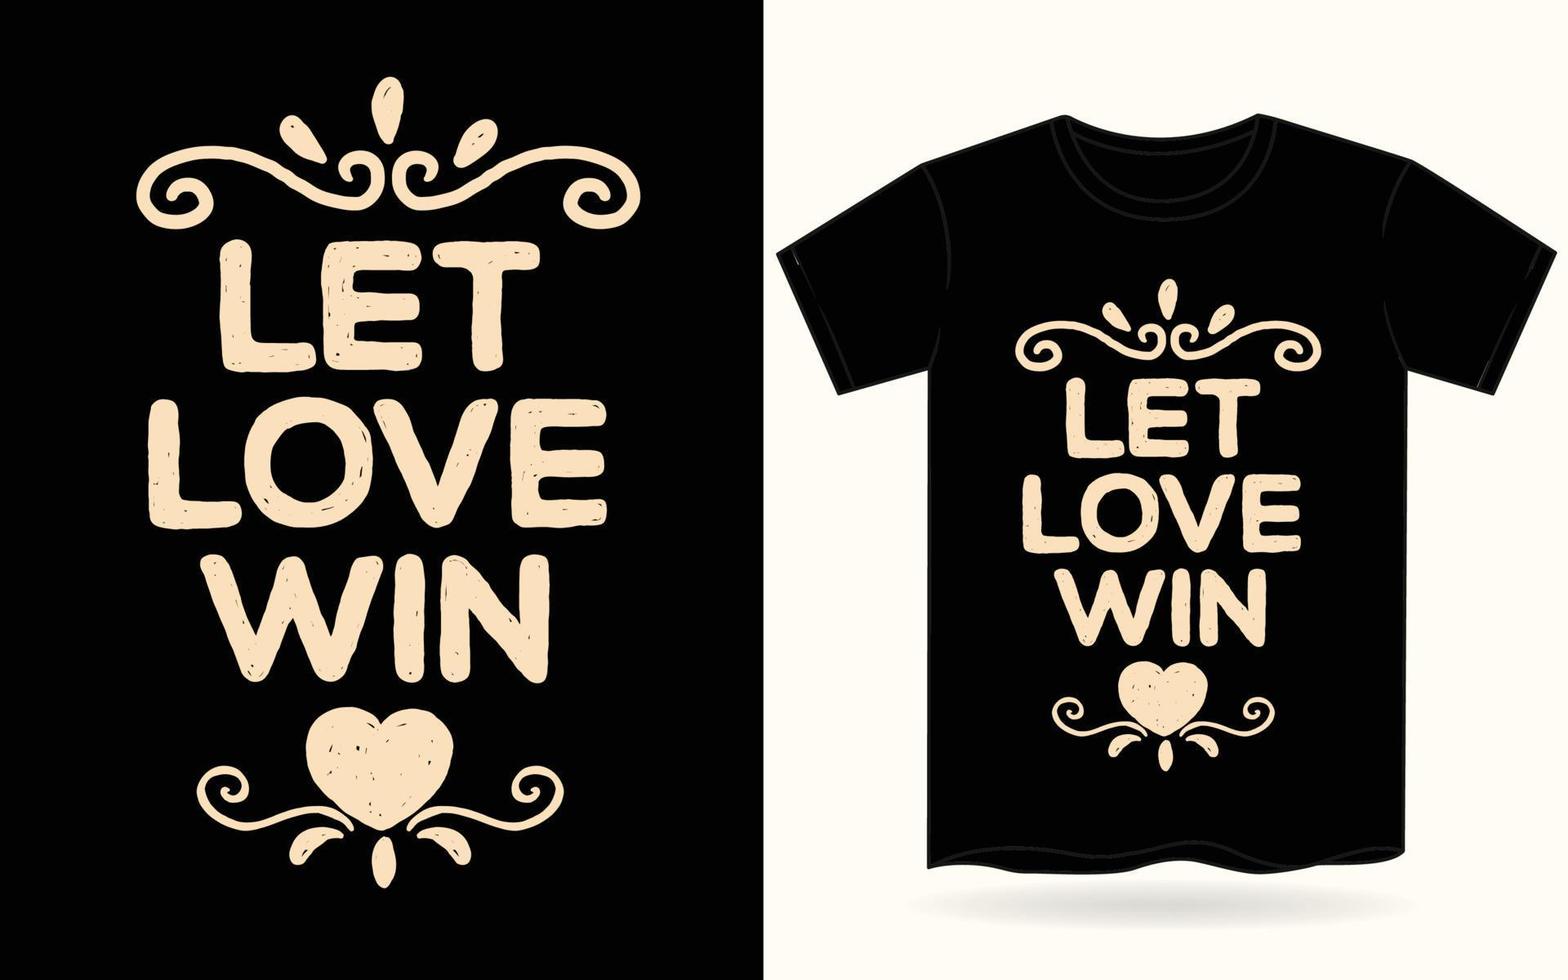 låt kärlek vinna handritad typografi för t-shirt vektor